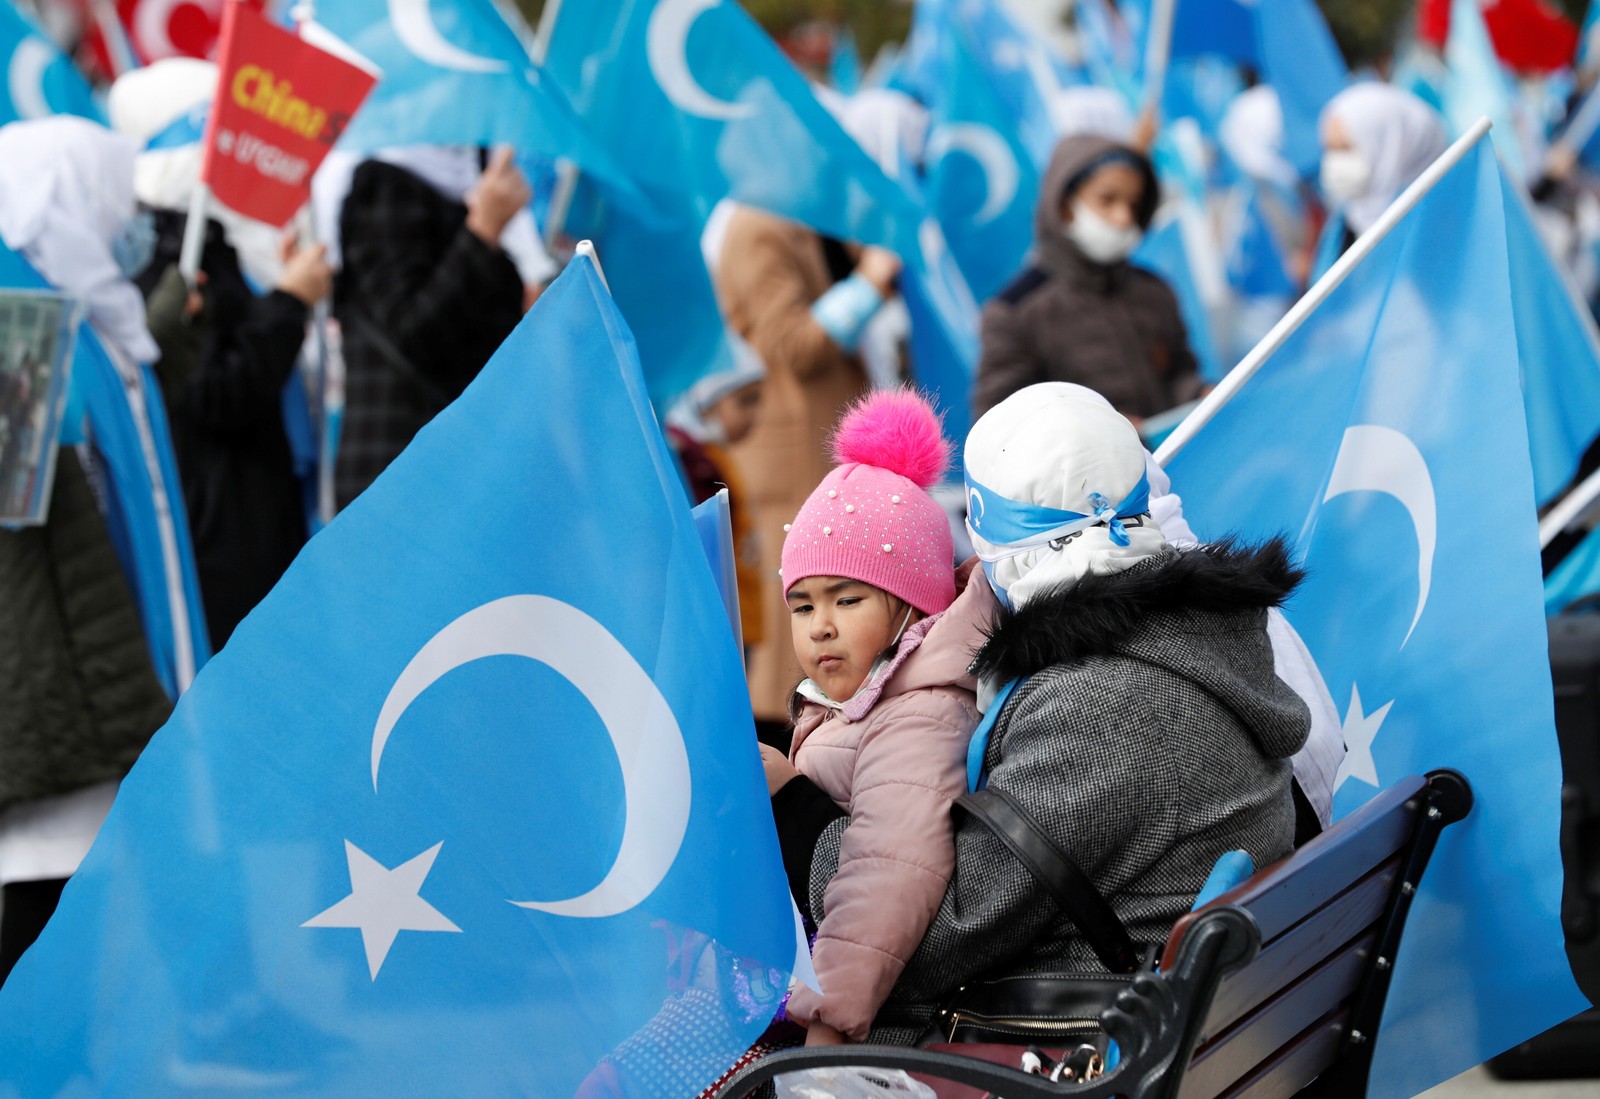 Manifestantes étnicos uigures acenam bandeiras do Turquestão Oriental durante uma reunião por ocasião do Dia Internacional da Mulher para protestar contra o tratamento dado pela China aos uigures, em Istambul, Turquia, 8 de março de 2021. REUTERS / Murad SezerREUTERS